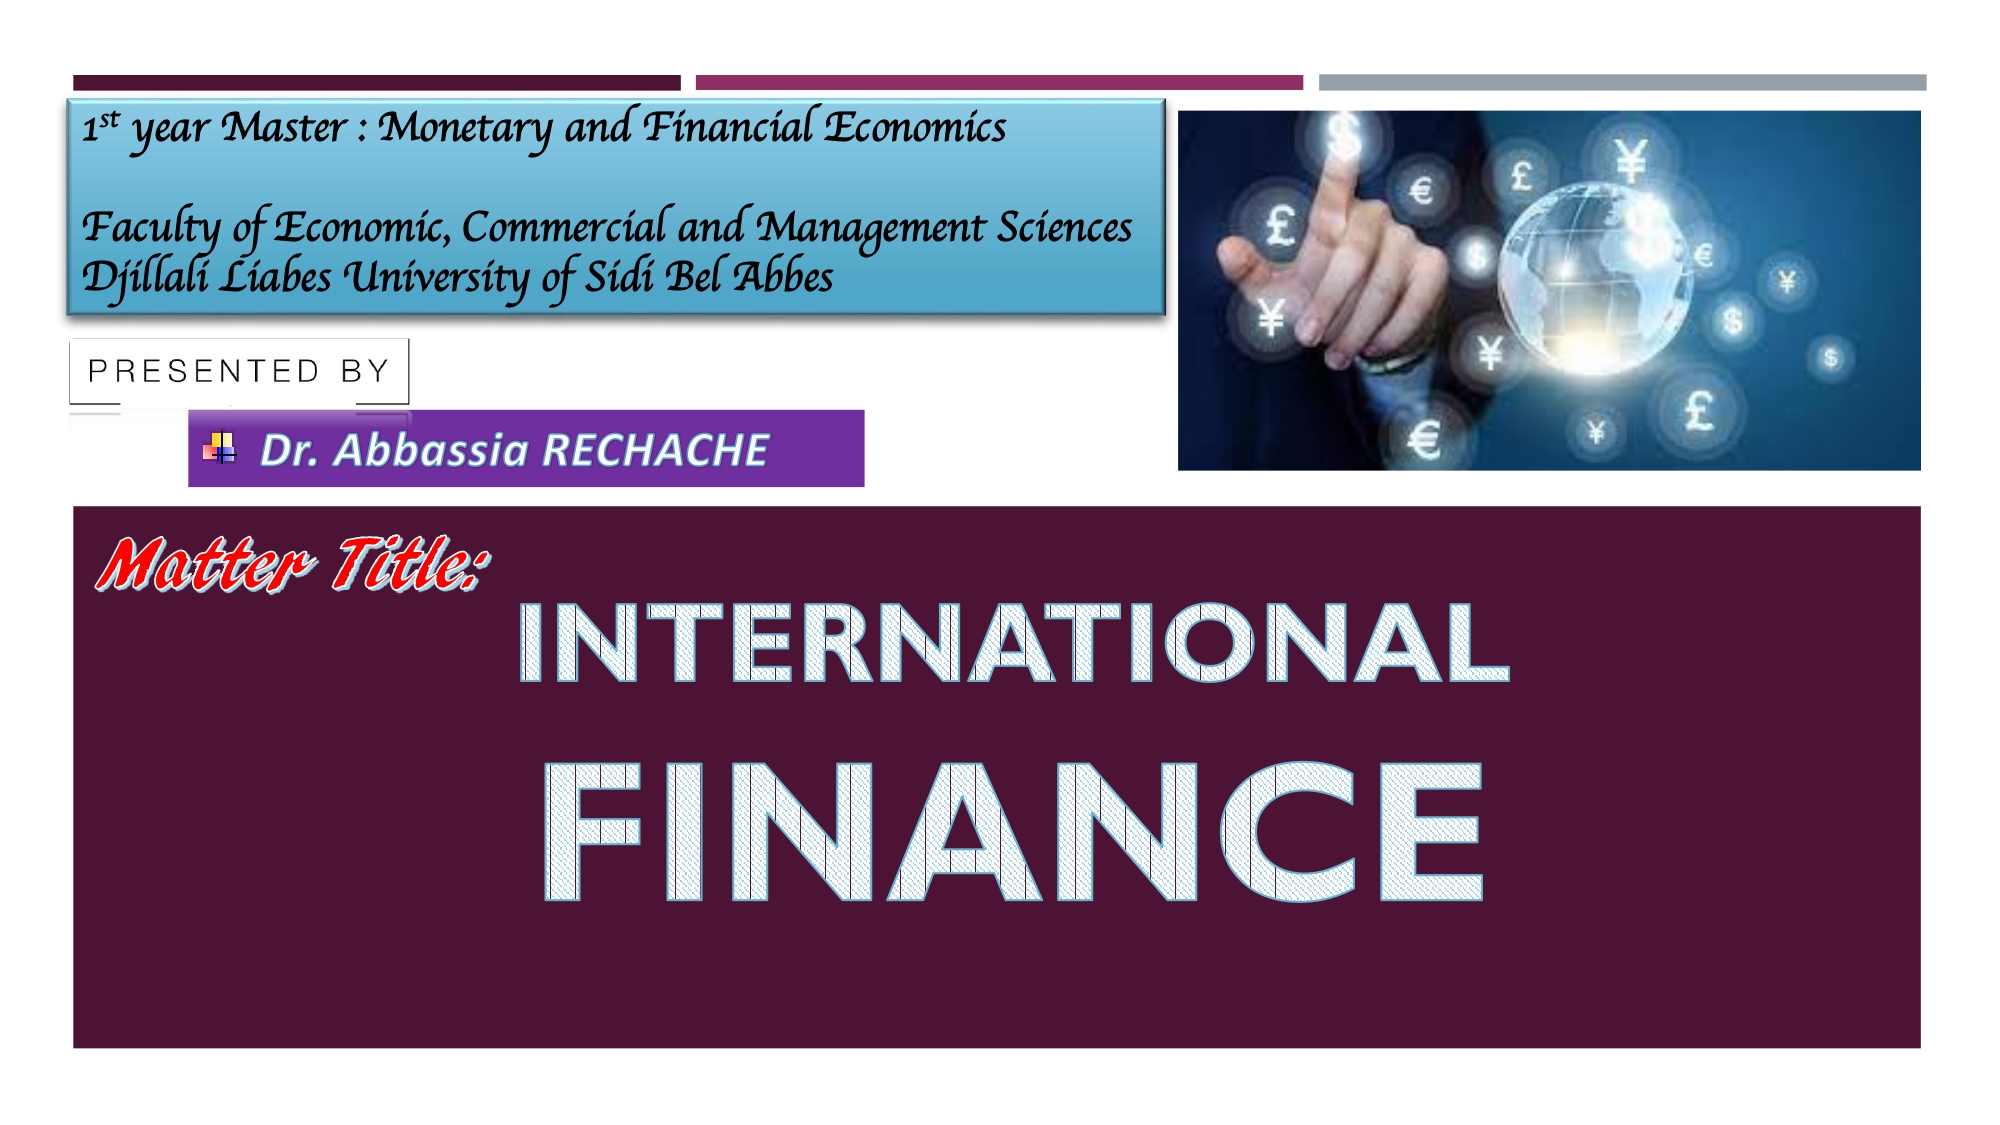 د. رشاش عباسية / International Finance / سنة أولى ماستر/إقتصاد نقدي ومالي/ شعبة العلوم الإقتصادية